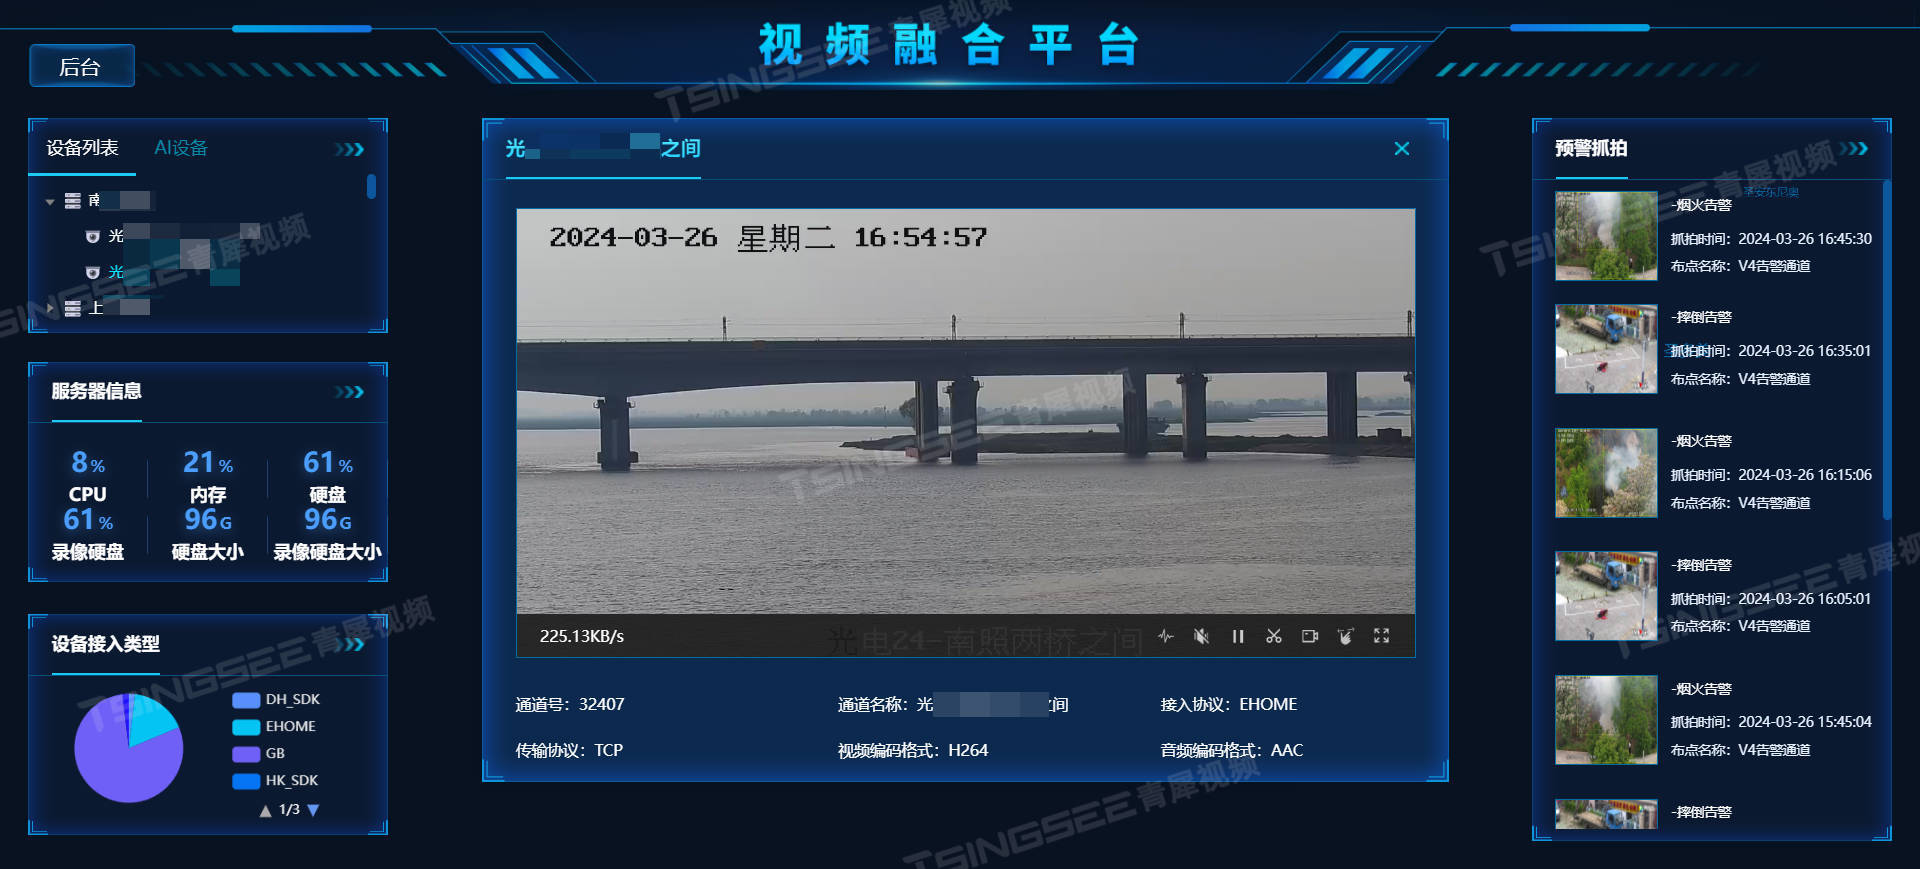 国标GB28181协议EasyCVR视频汇聚平台获取设备录像仅展示部分片段的原因排查